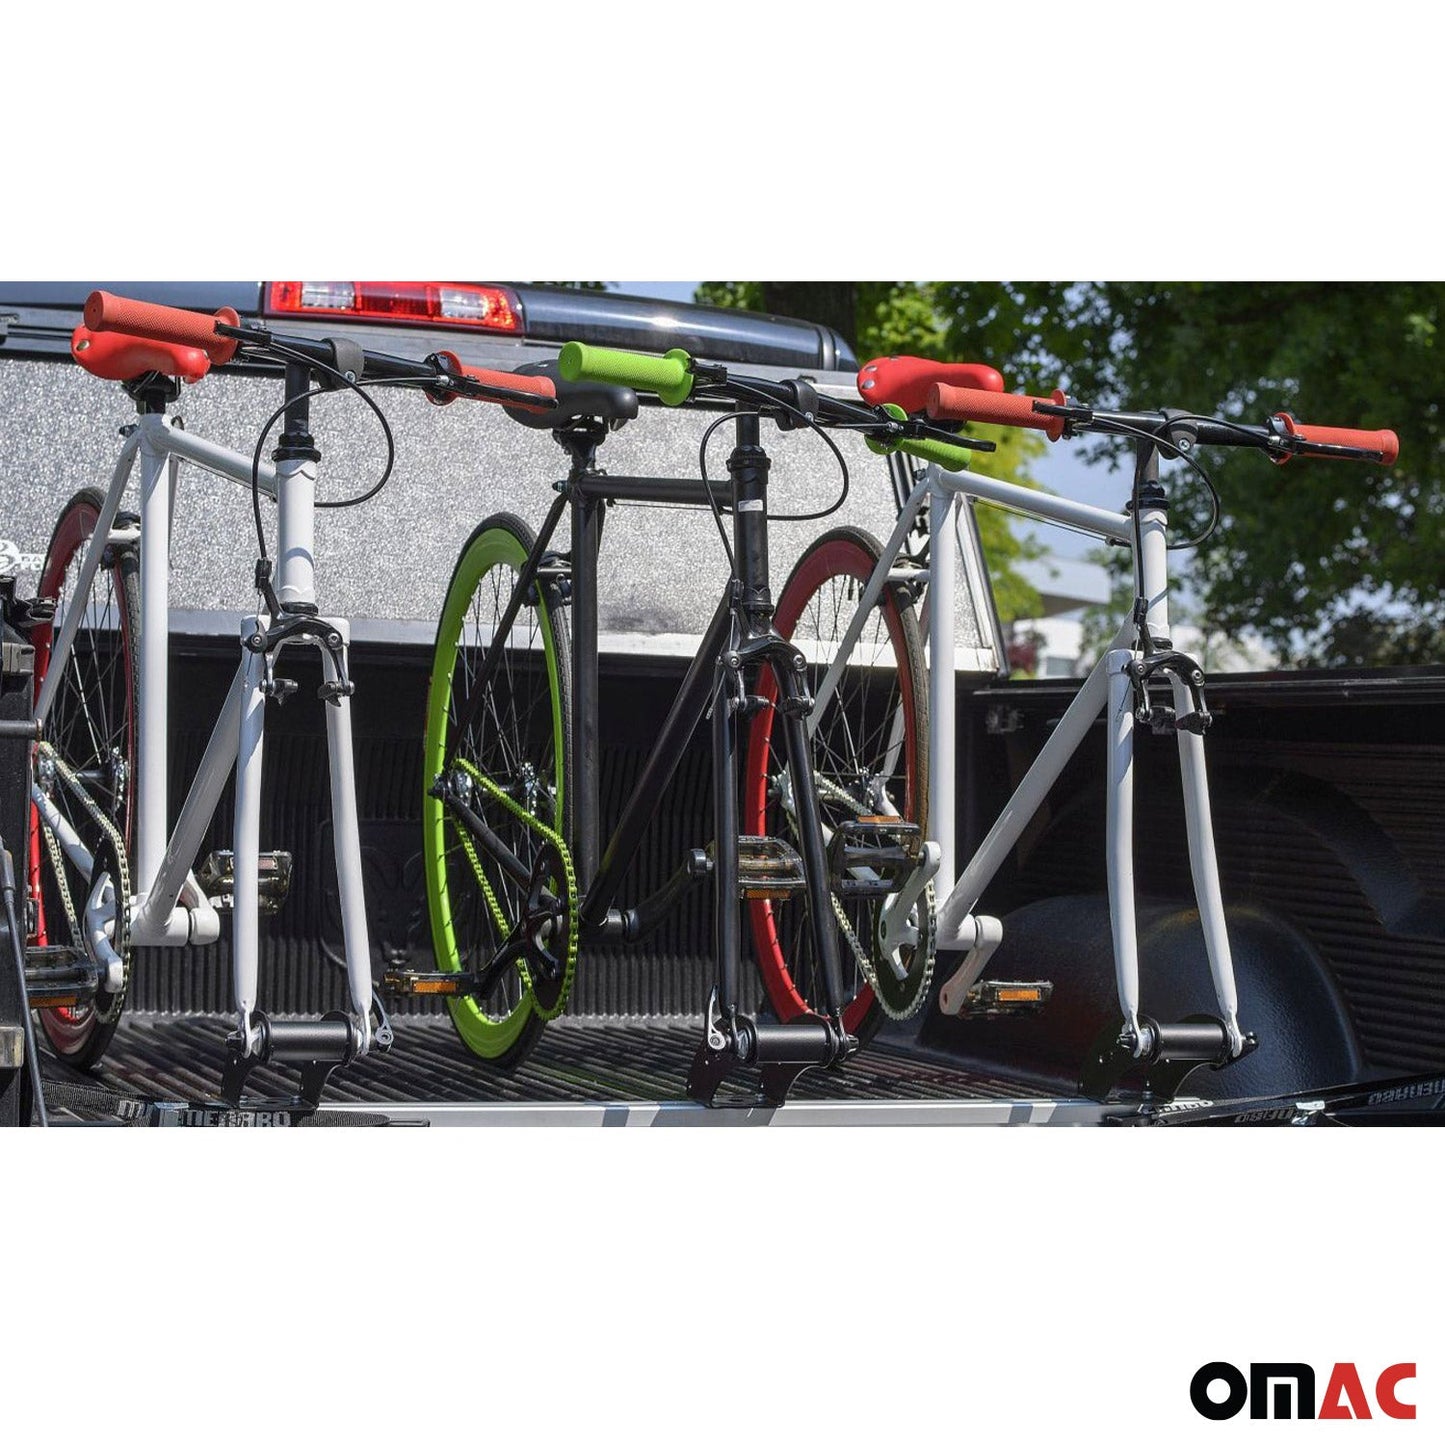 OMAC 3 Bike Carrier Racks Interior Cargo Trunk Mount for Ford Ranger Aluminium U026059